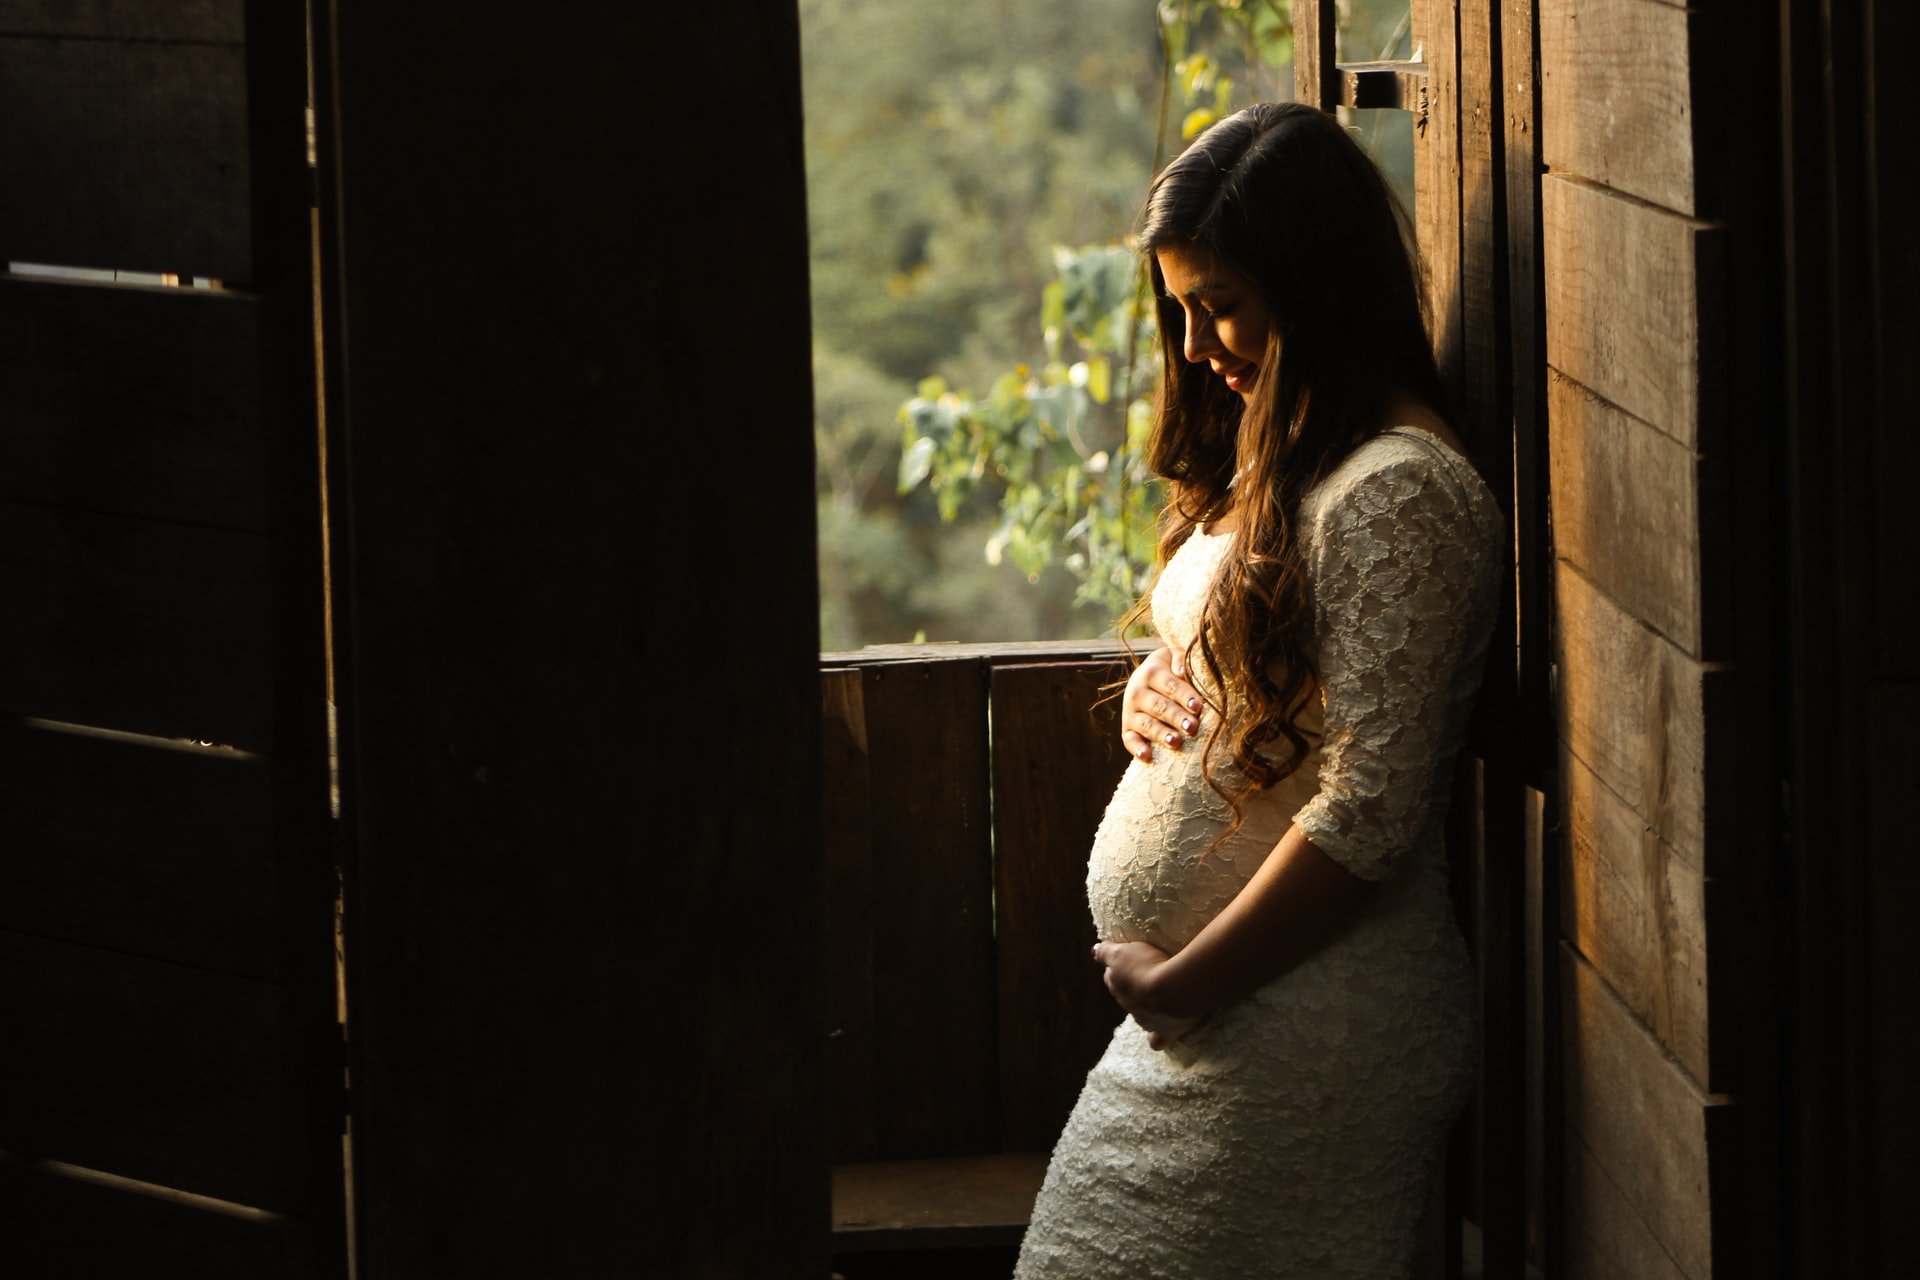 Der Ehemann von OP hat sich während beider Schwangerschaften um sie gekümmert | Quelle: Unsplash